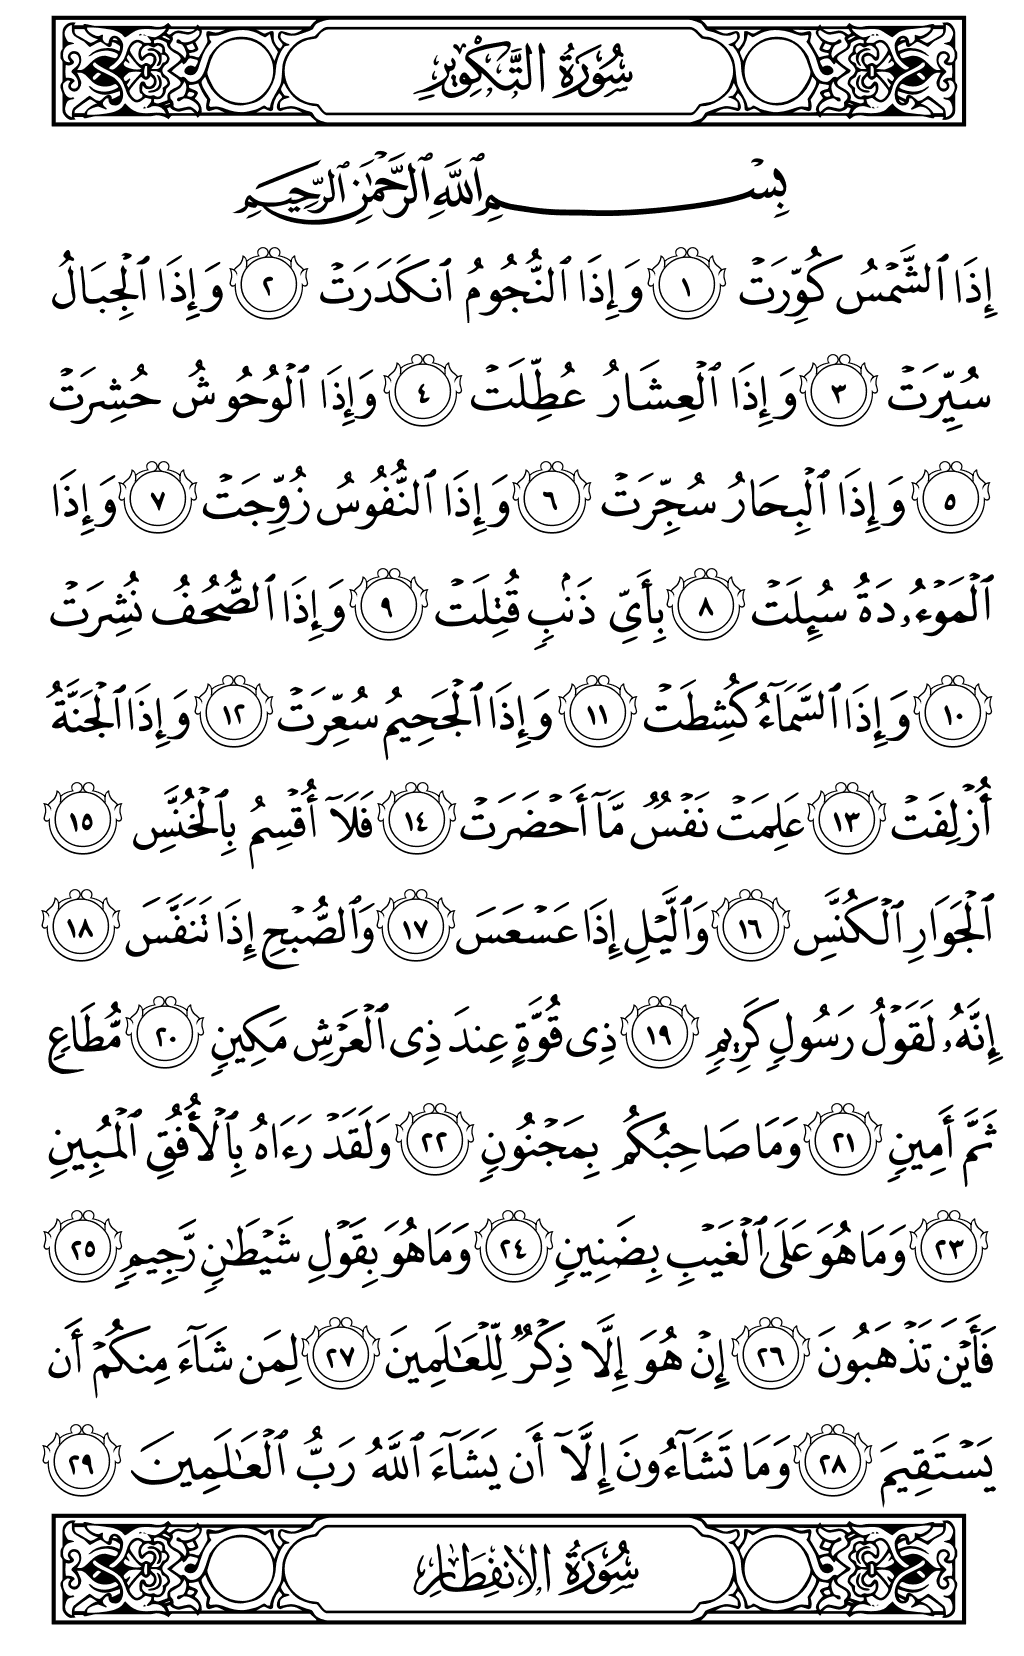 الصفحة رقم 586 من القرآن الكريم